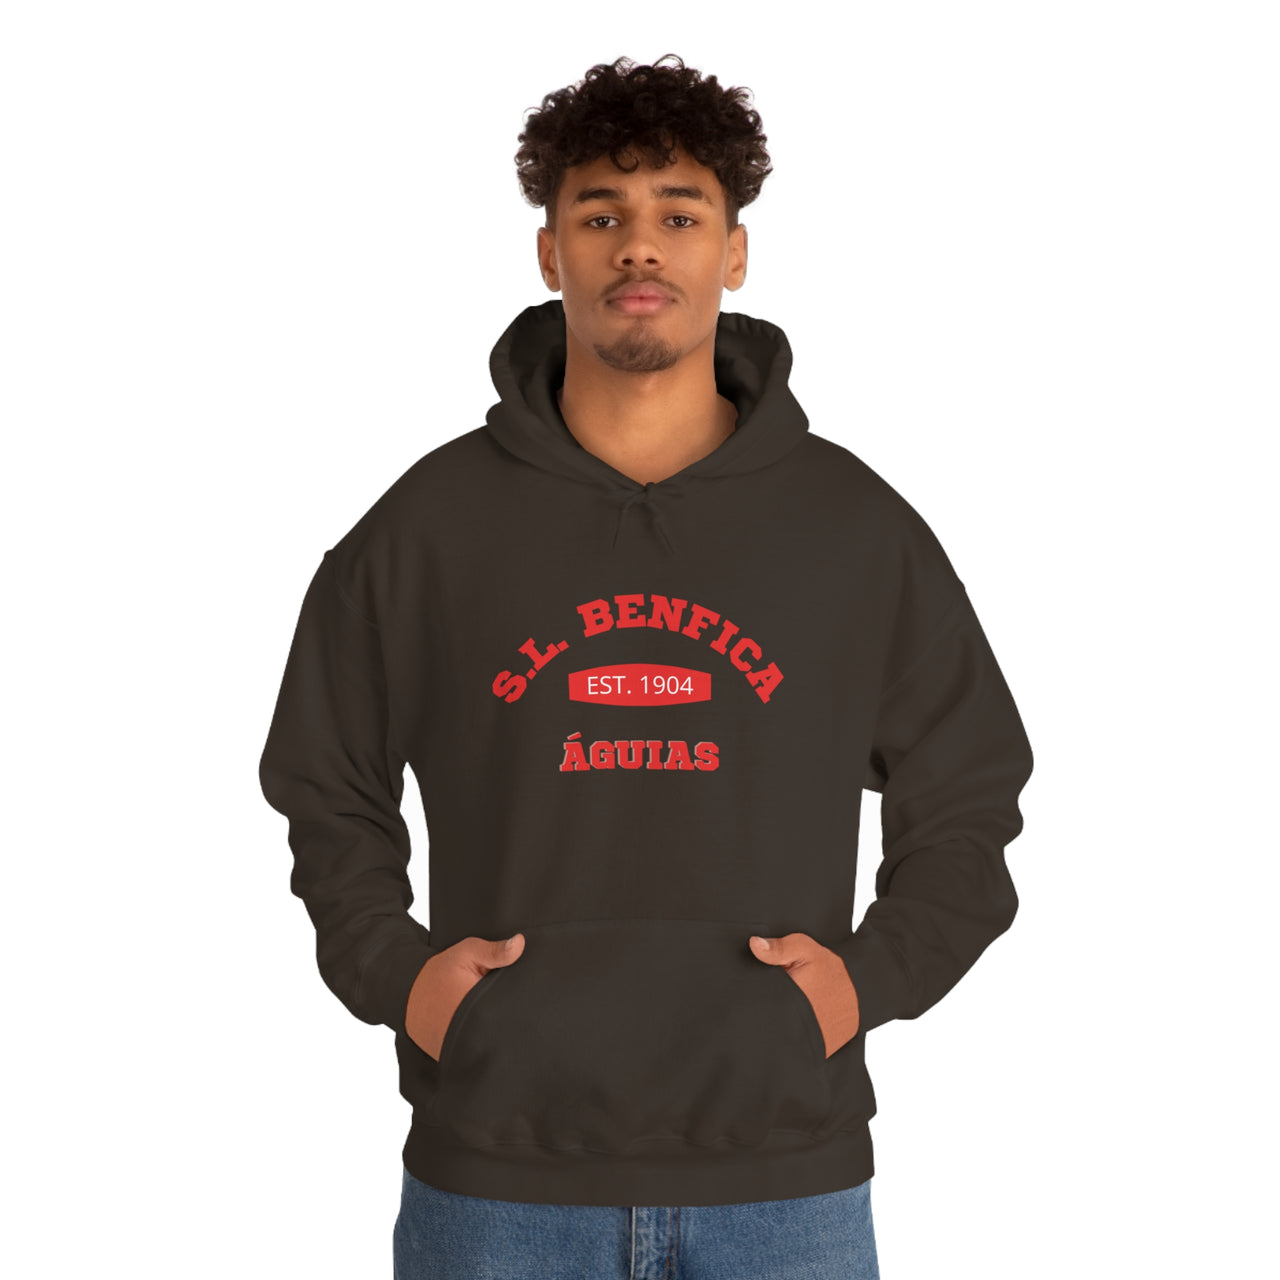 Benfica Unisex Hooded Sweatshirt